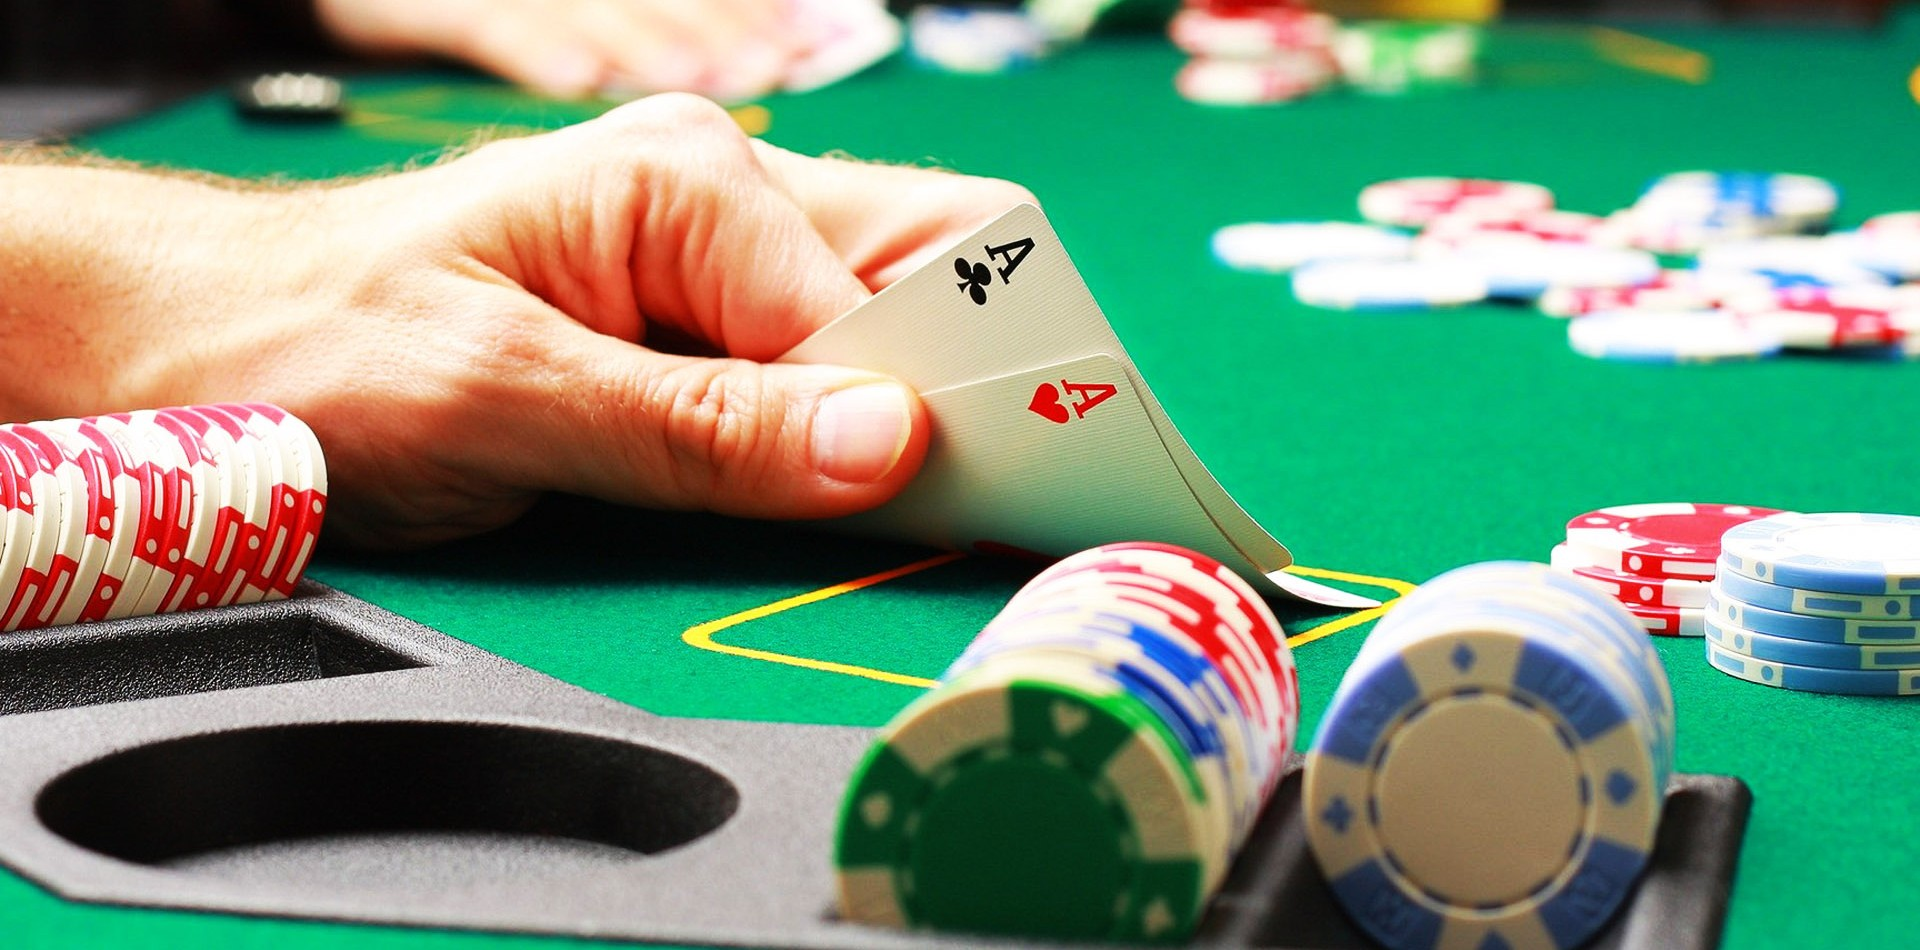 Gambling tips for online casino